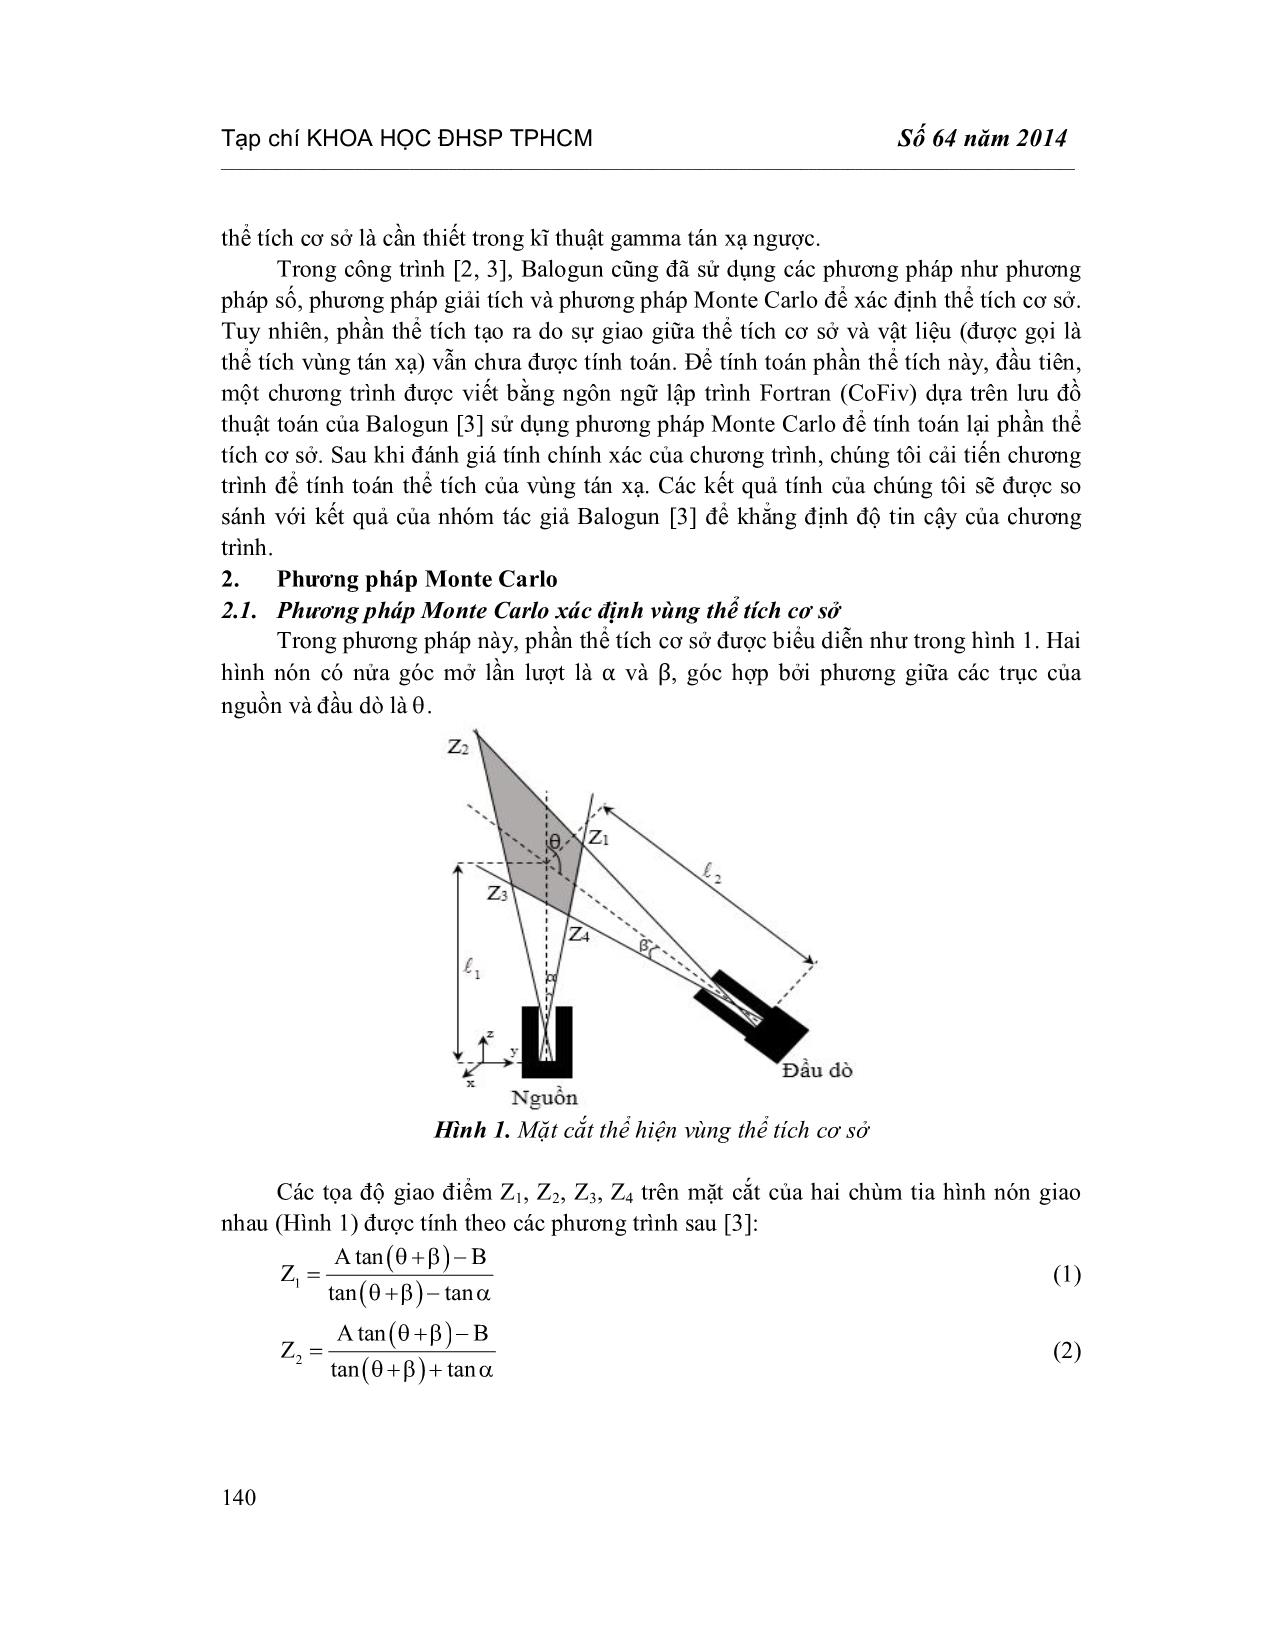 Xác định thể tích vùng tán xạ bằng phương pháp Monte Carlo trang 2